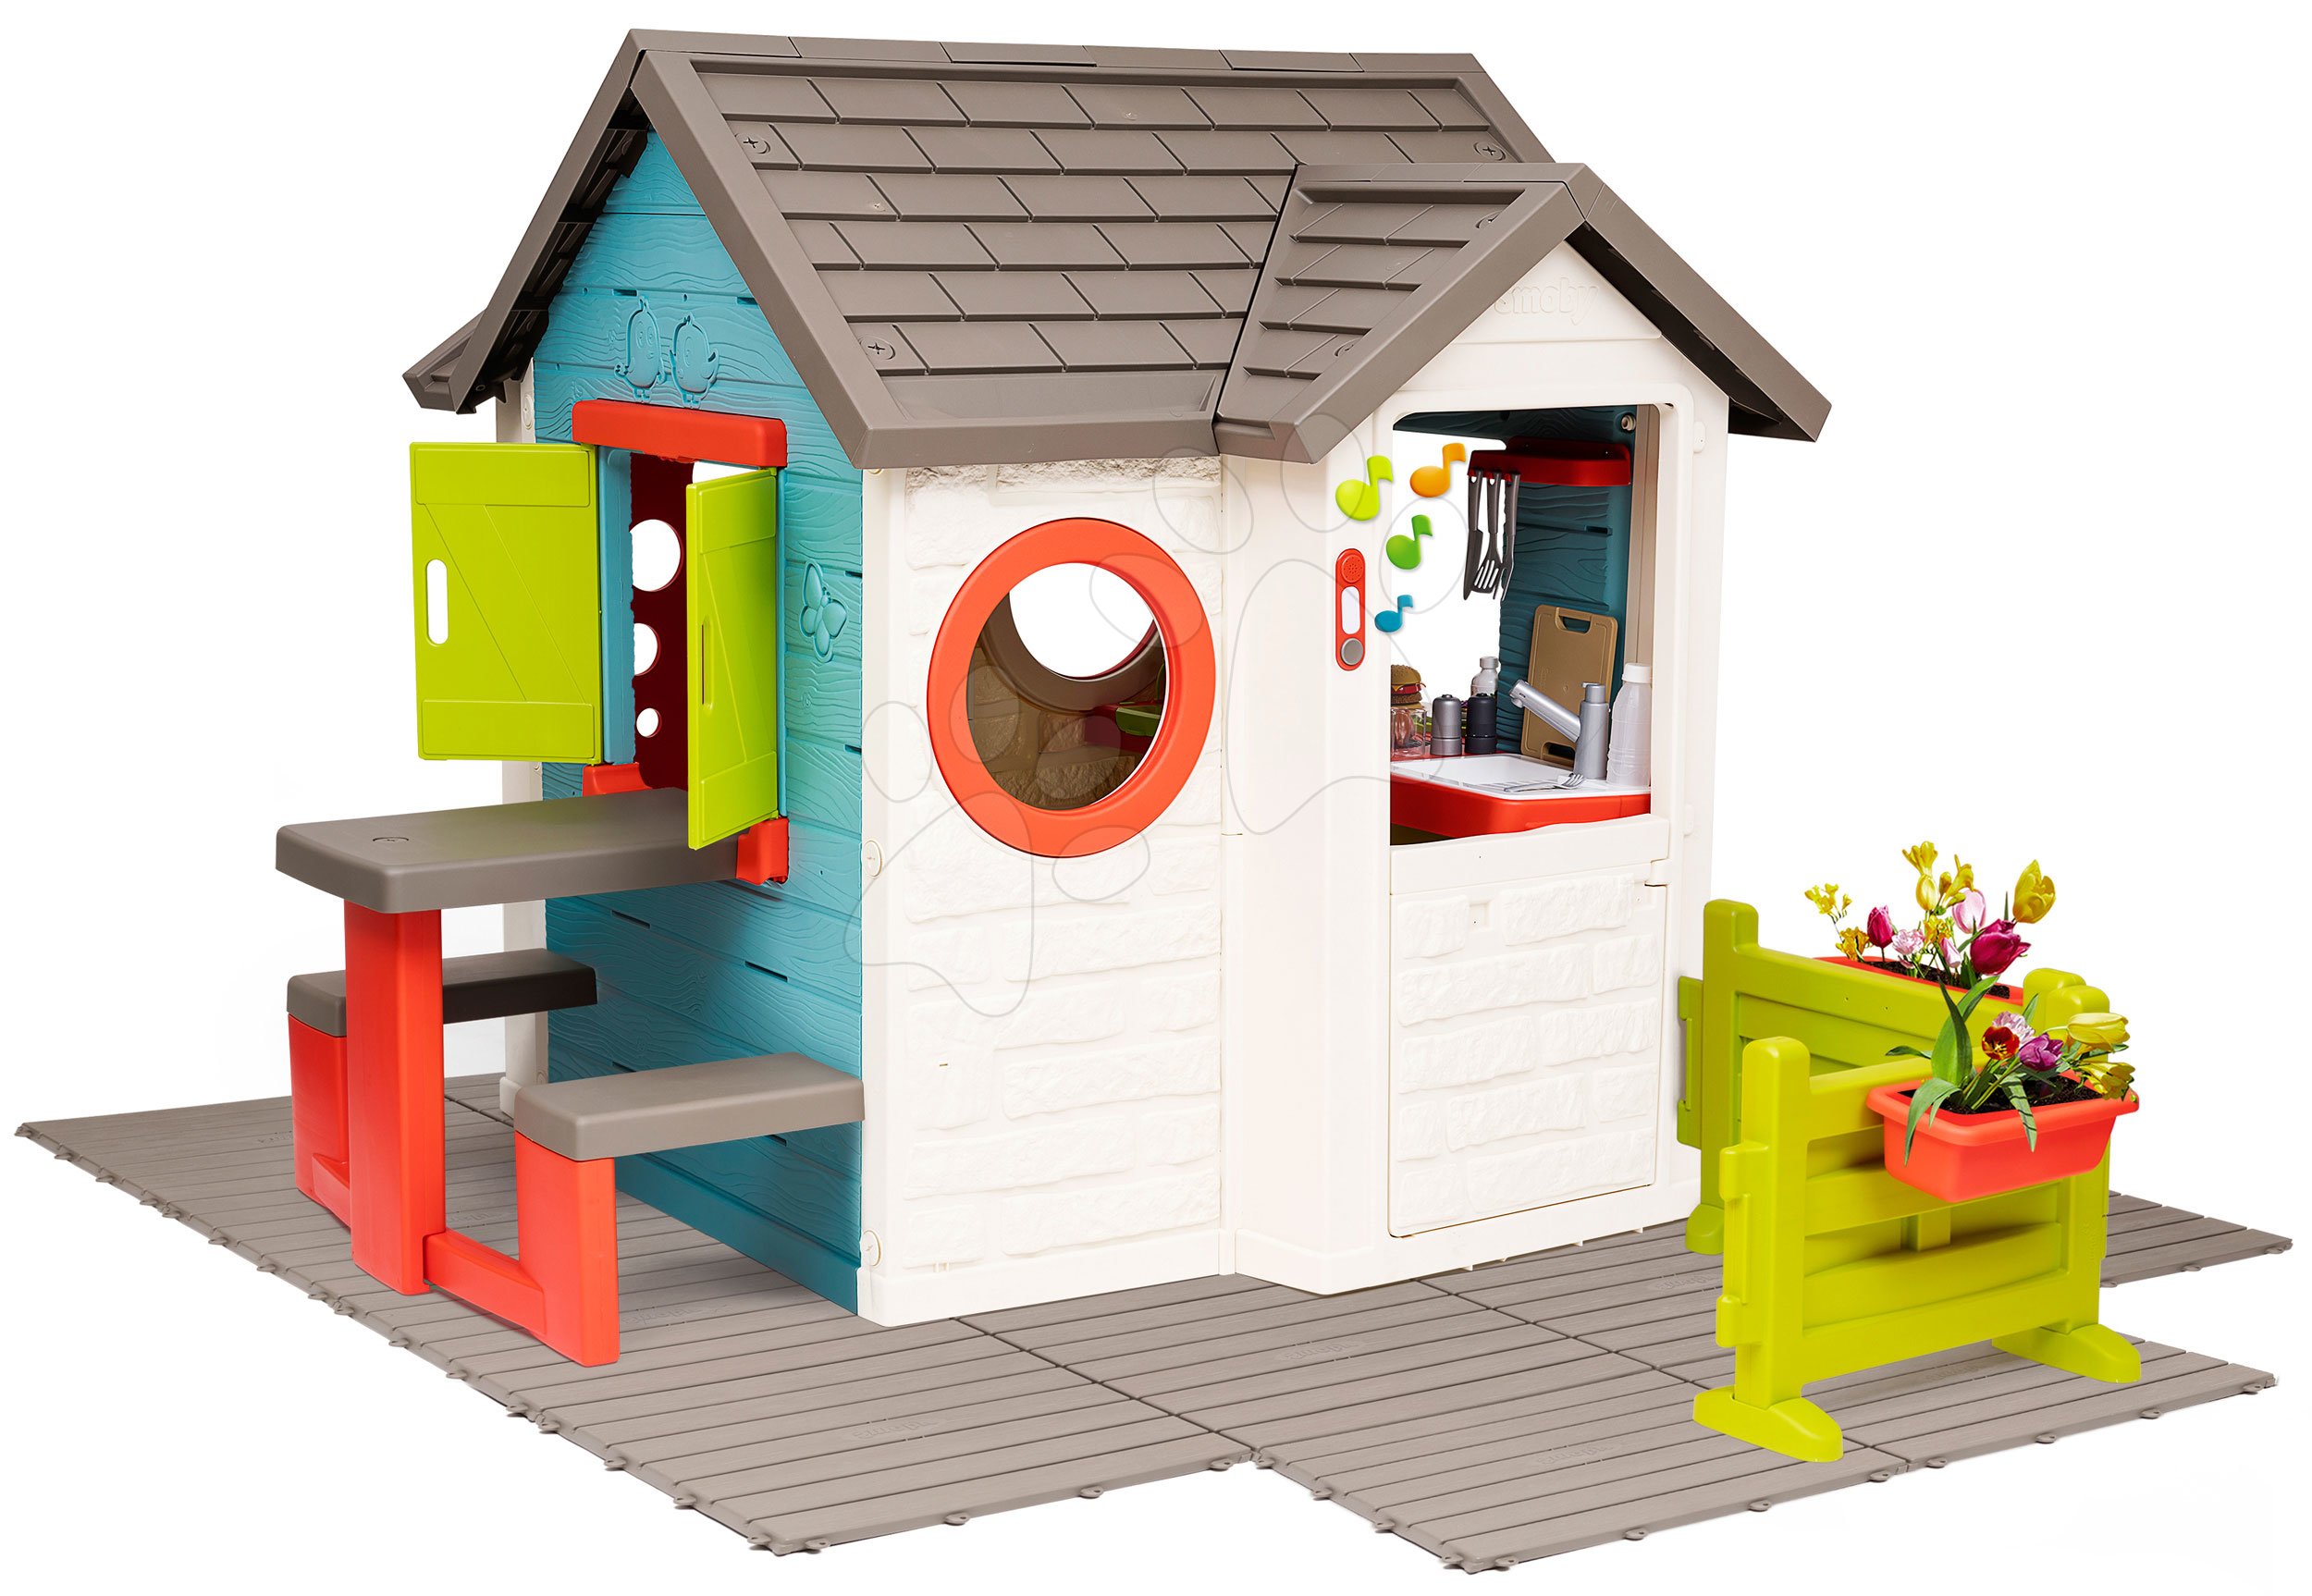 Kerti játszóházak gyerekeknek - Házikó kerti büfével Chef House DeLuxe Smoby padlóburkolat, asztal és előkert